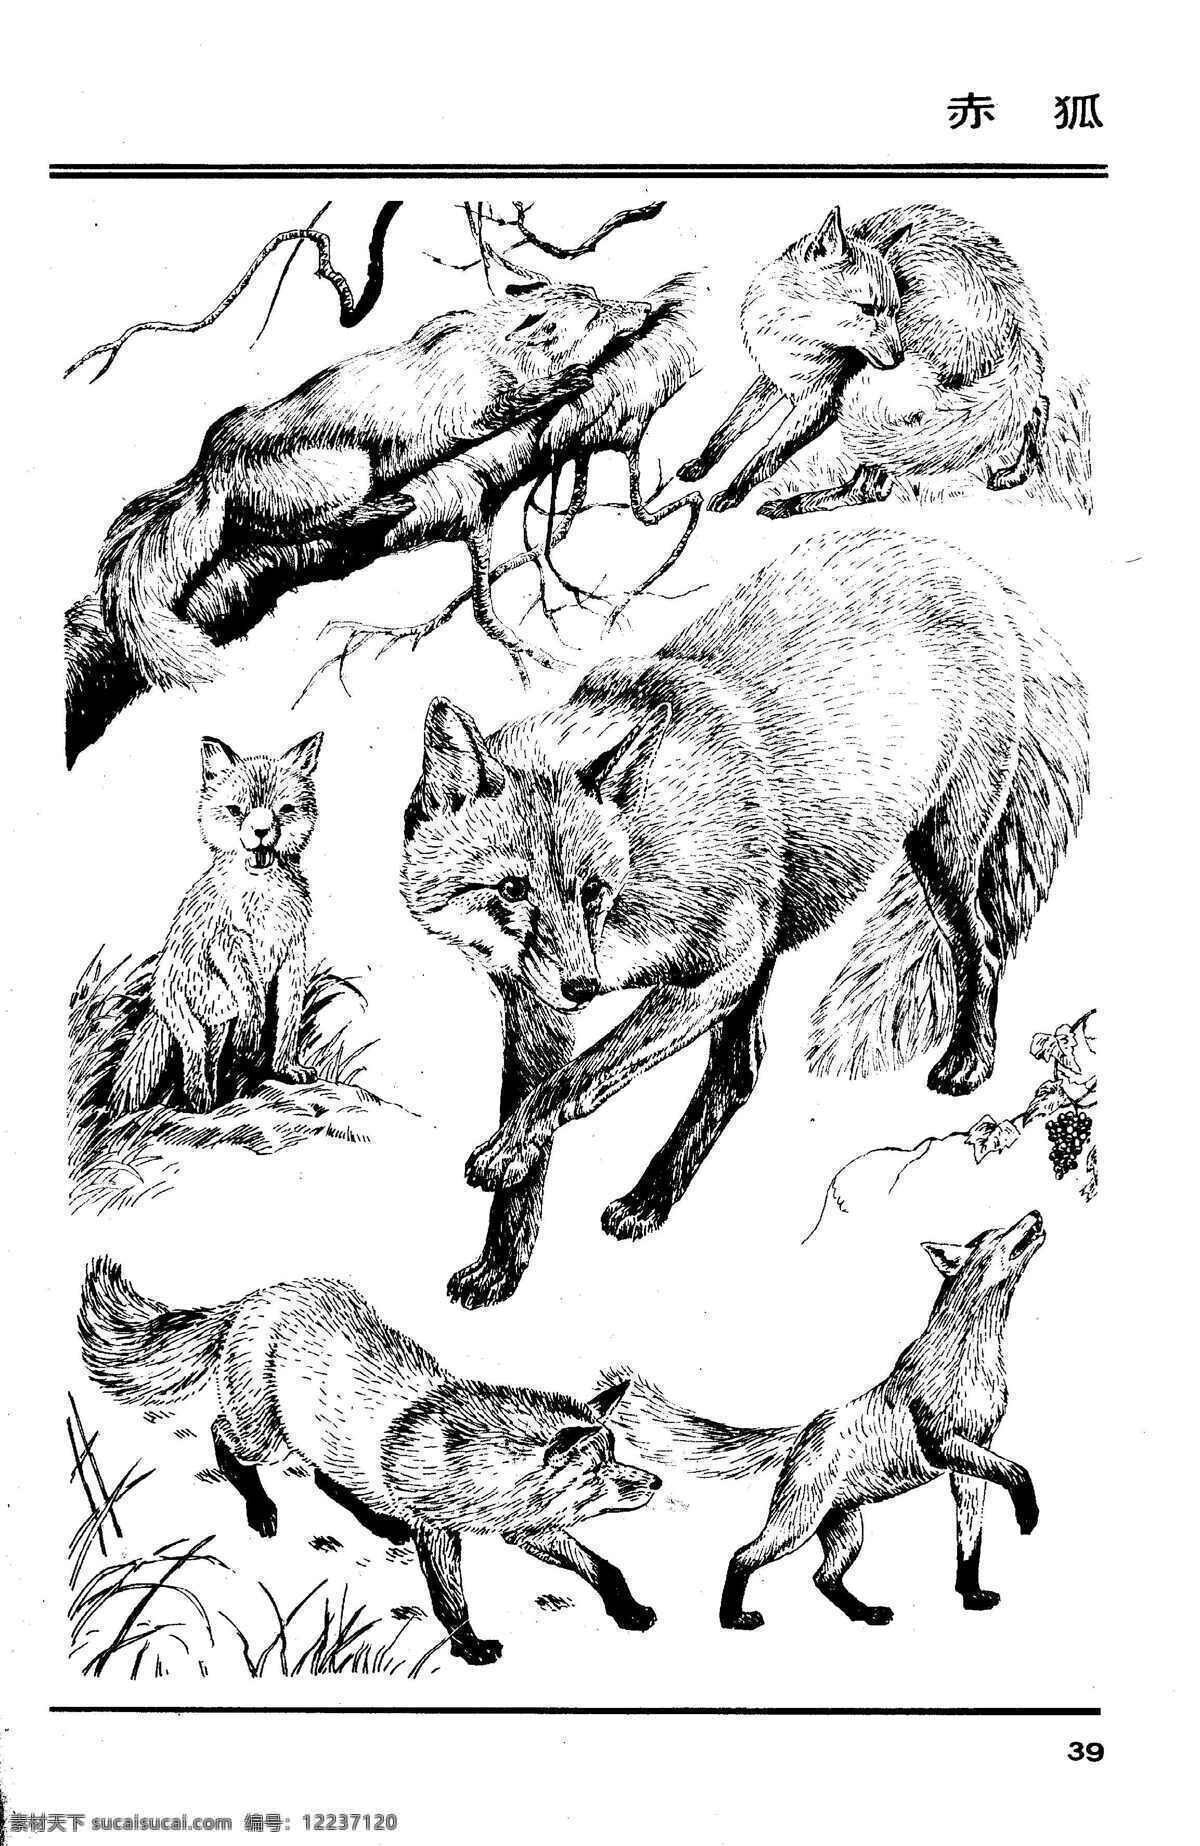 画兽谱37 赤狐 百兽 兽 家禽 猛兽 动物 白描 线描 绘画 美术 禽兽 野生动物 画兽谱 狐狸 狐 生物世界 设计图库